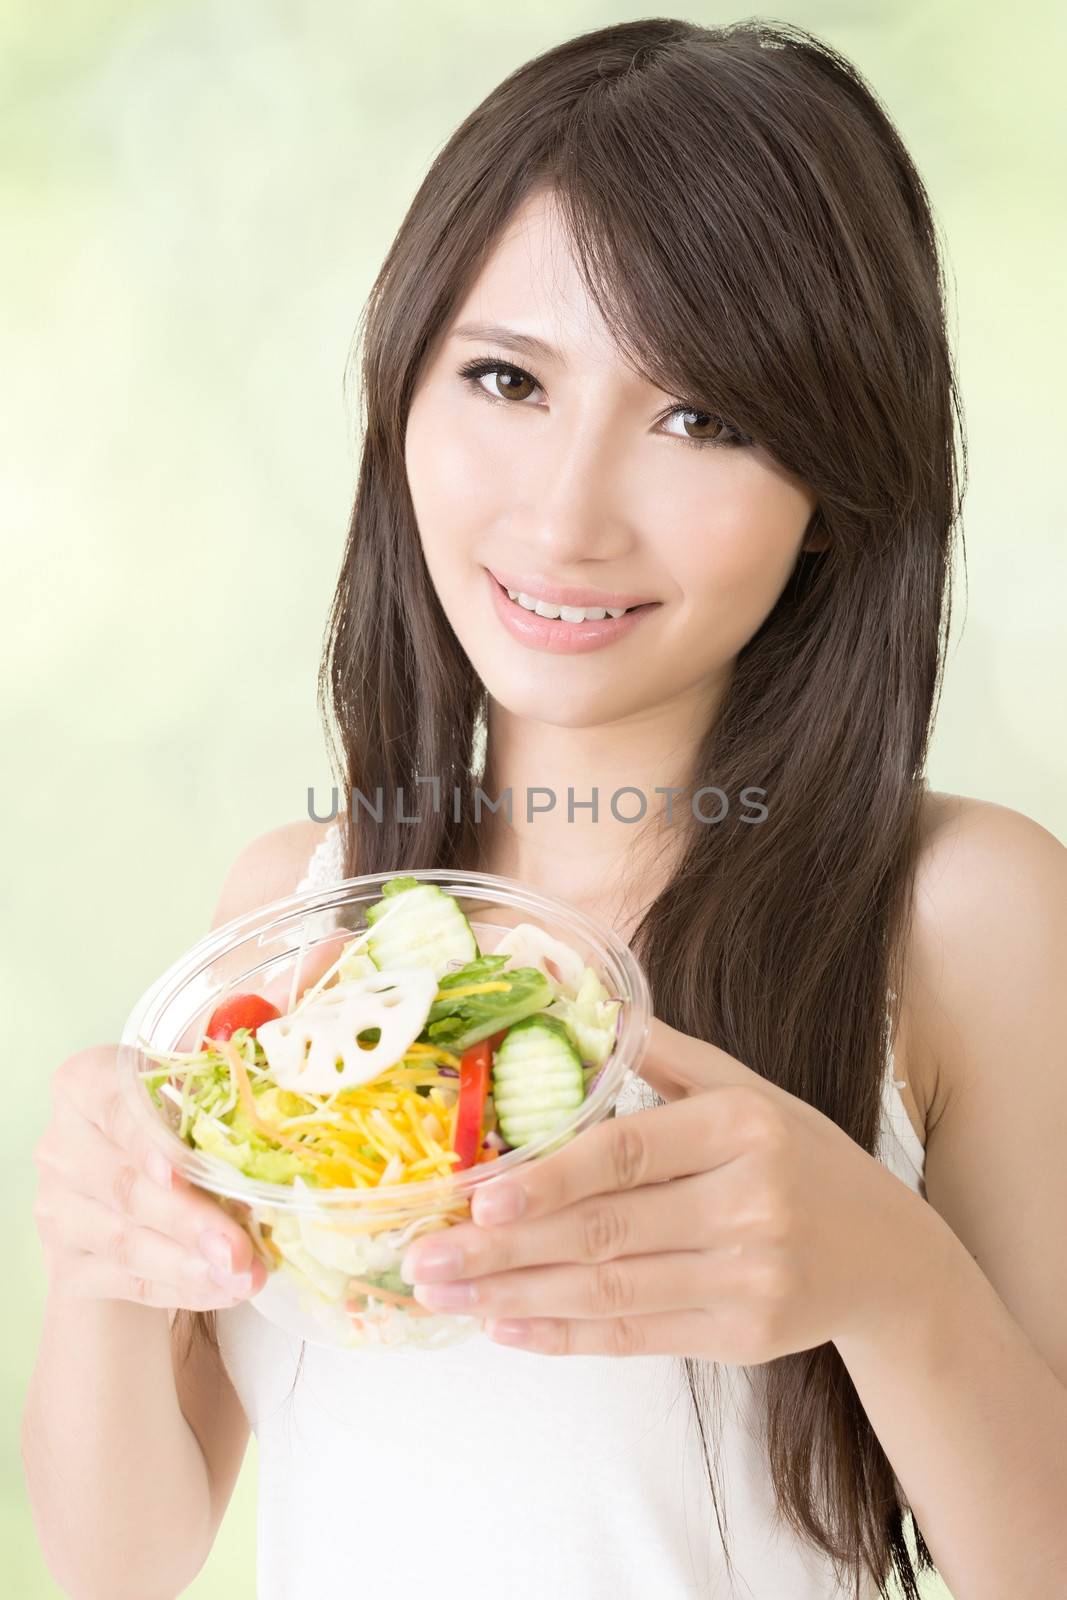 Asian beauty eat salad, closeup portrait.